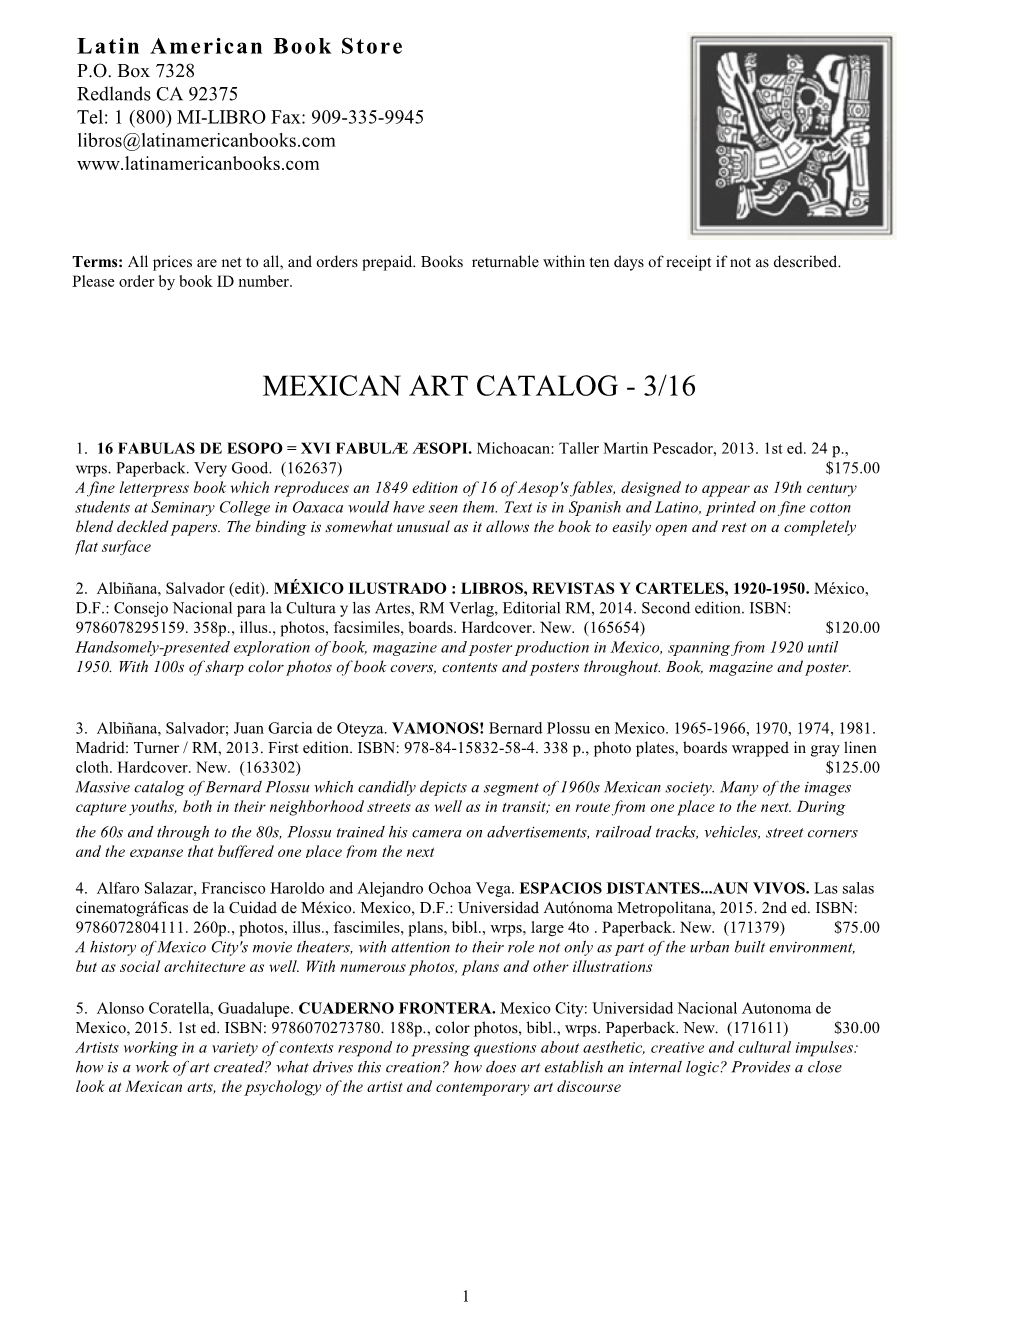 Mexican Art Catalog - 3/16